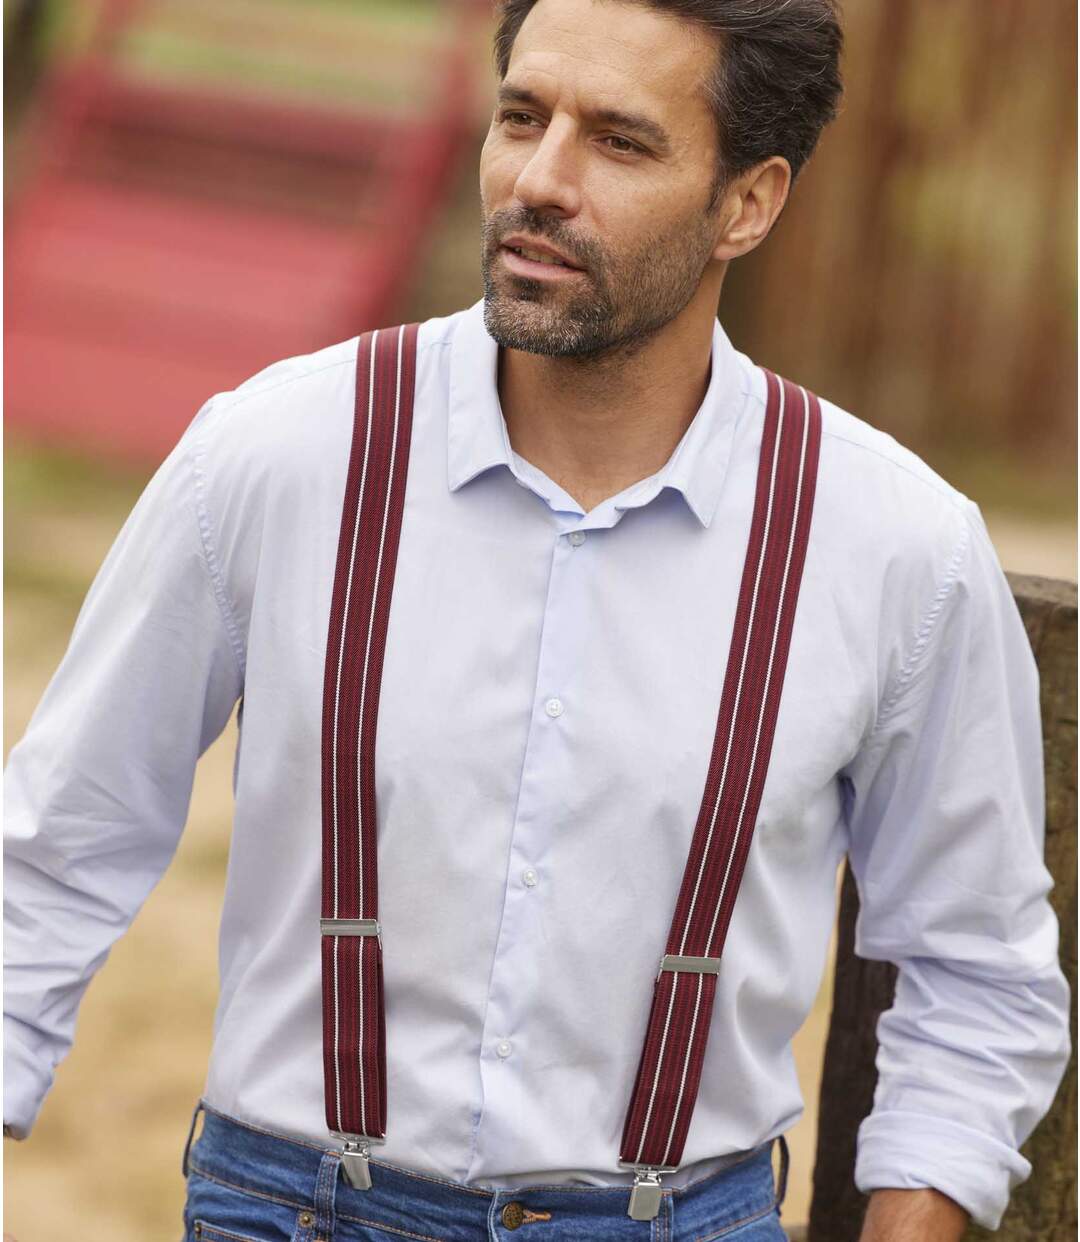 Men's Striped Burgundy Suspenders Gift Set Atlas For Men